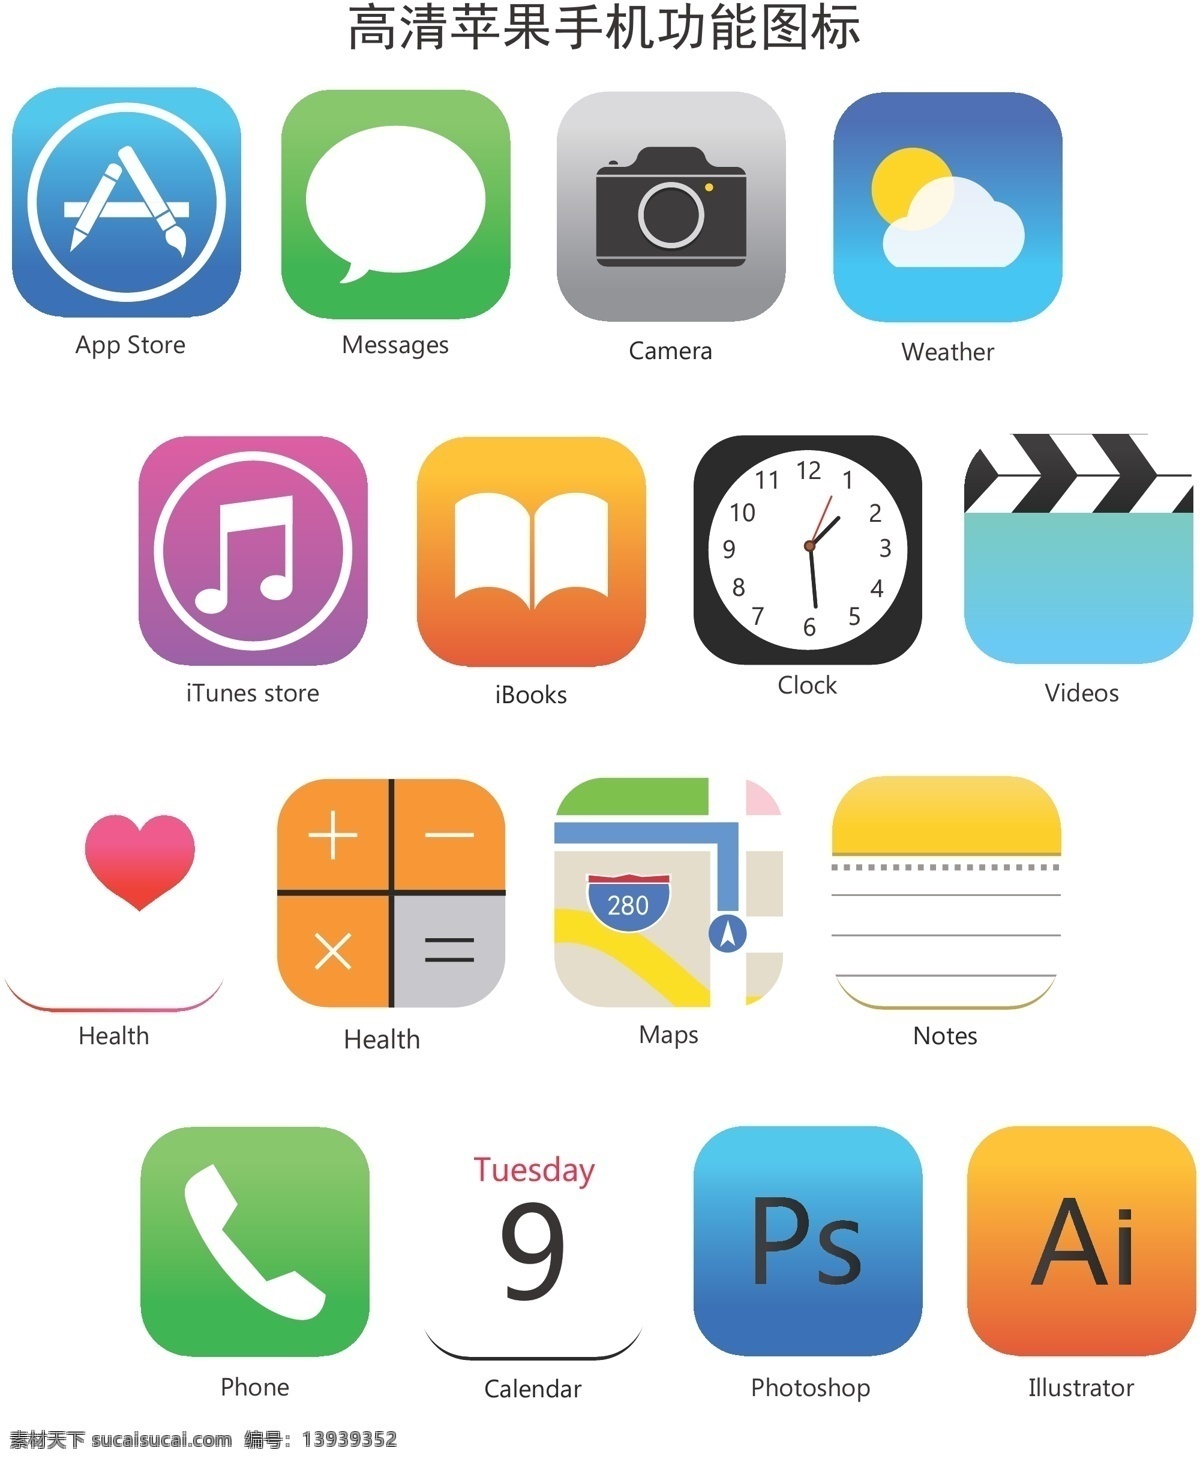 高清 苹果 手机功能 图标 功能 ui 手机 小图标 logo 网页 移动 界面 图标设计 移动界面设计 ui设计